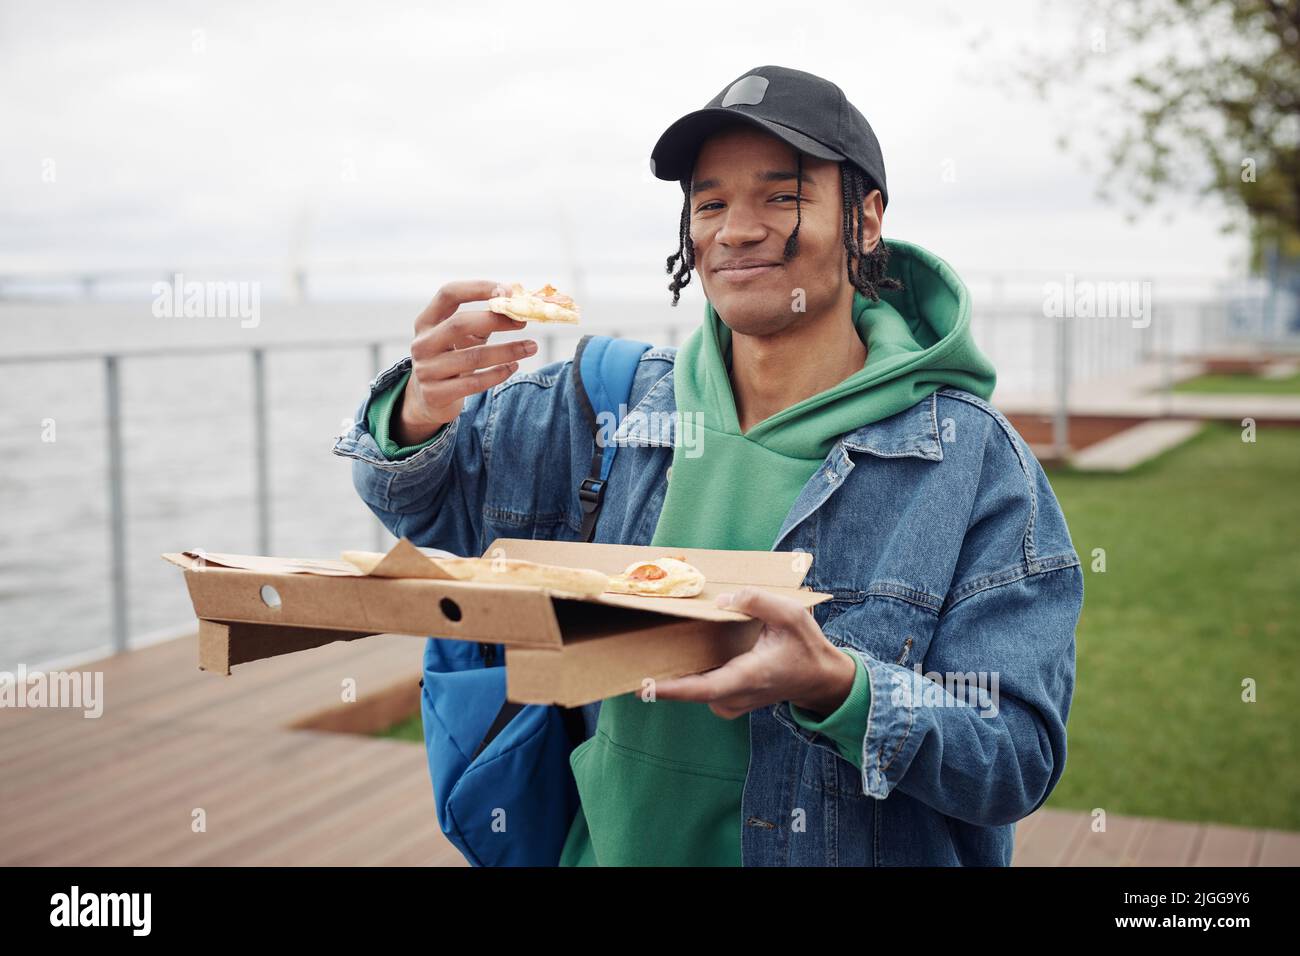 Fröhlicher schwarzer Kerl in der Freizeitkleidung, der ein Stück Pizza über einer quadratischen Schachtel hält, während er einen Snack hat und während des Picknicks im Park die Kamera anschaut Stockfoto